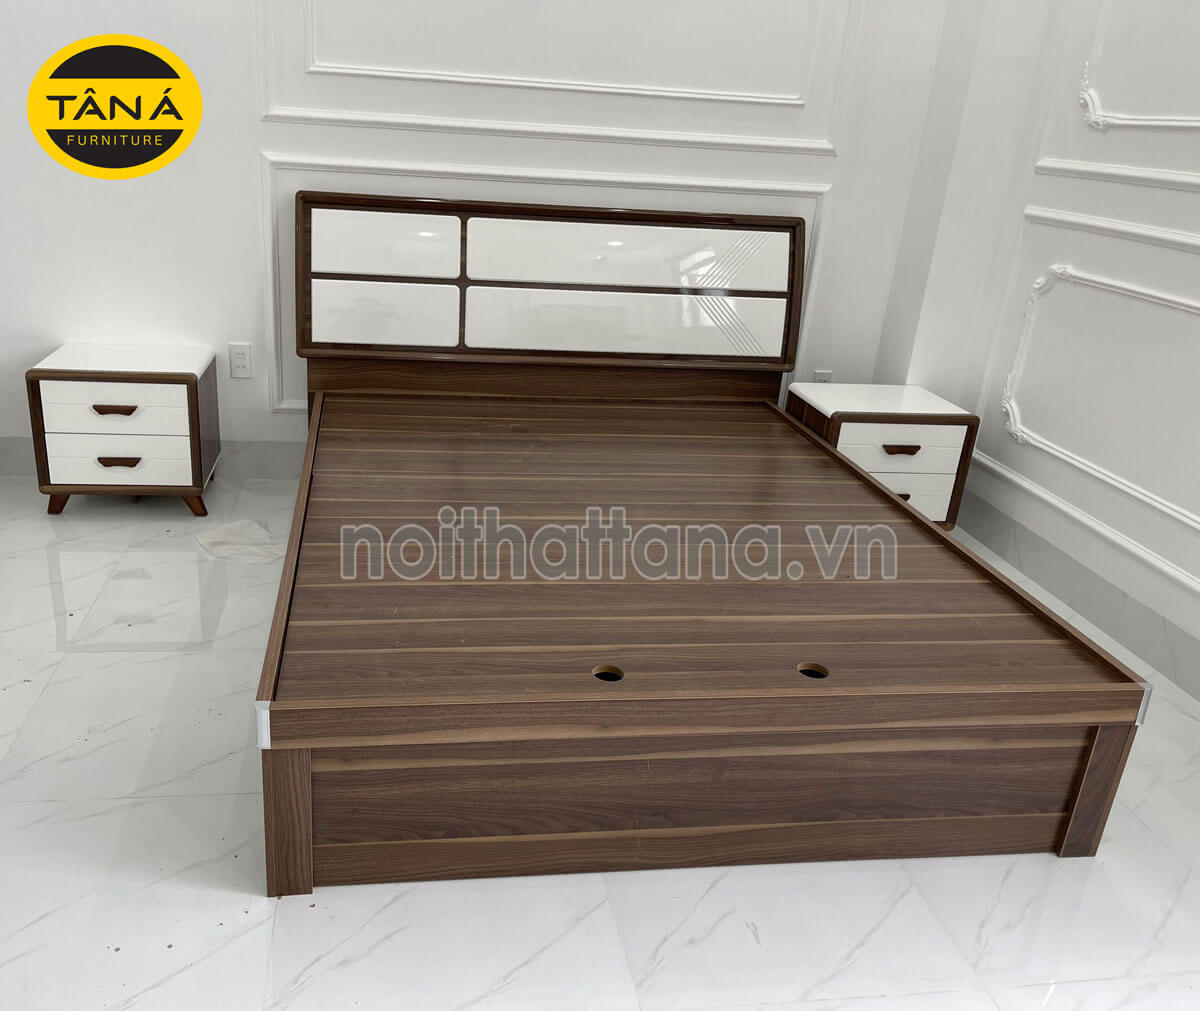 kích thước giường ngủ gỗ công nghiệp 1m8